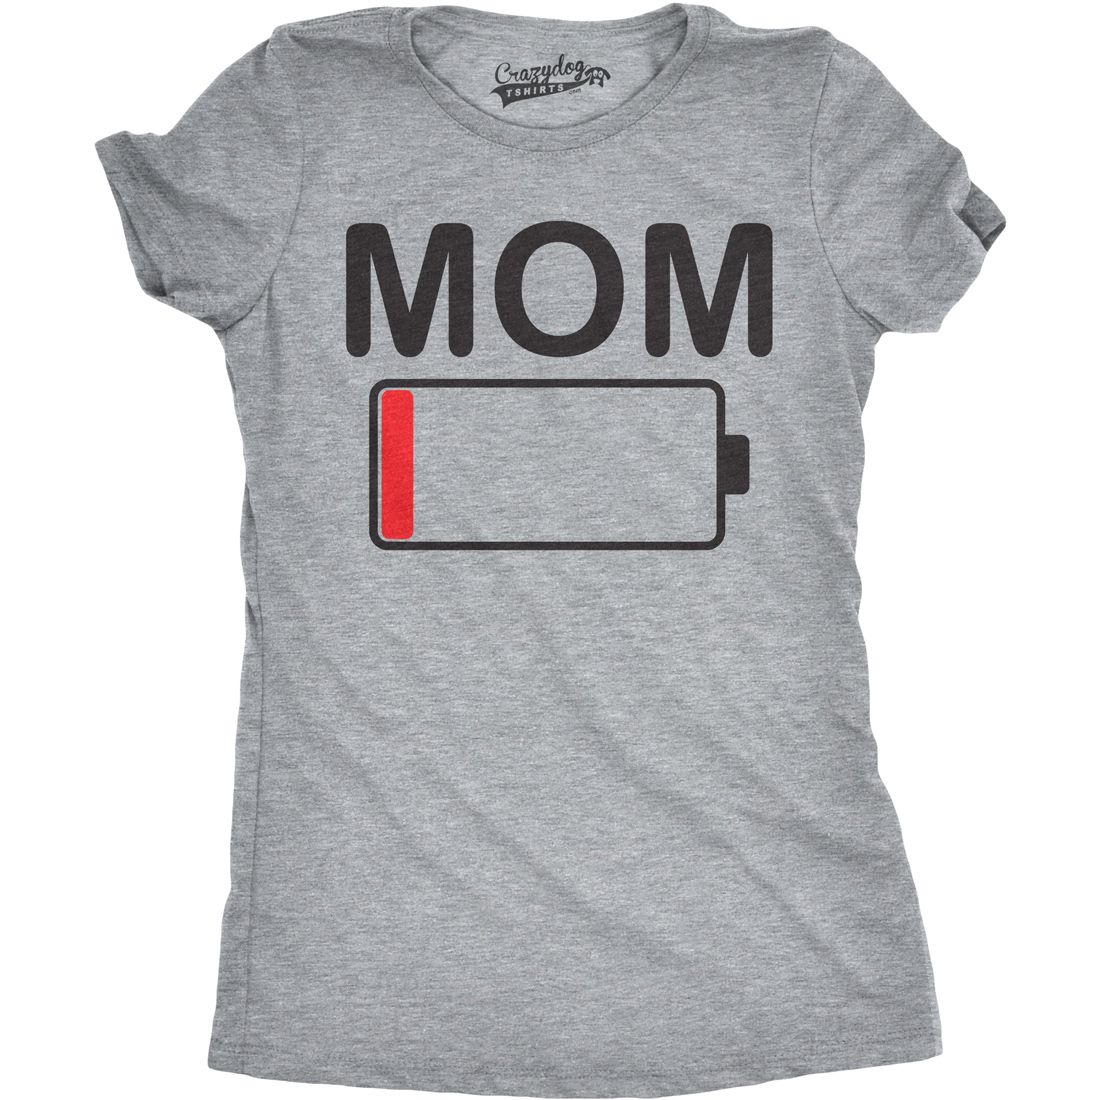 Mom Life Shirts 2018: Mom Life Battery Life 2022